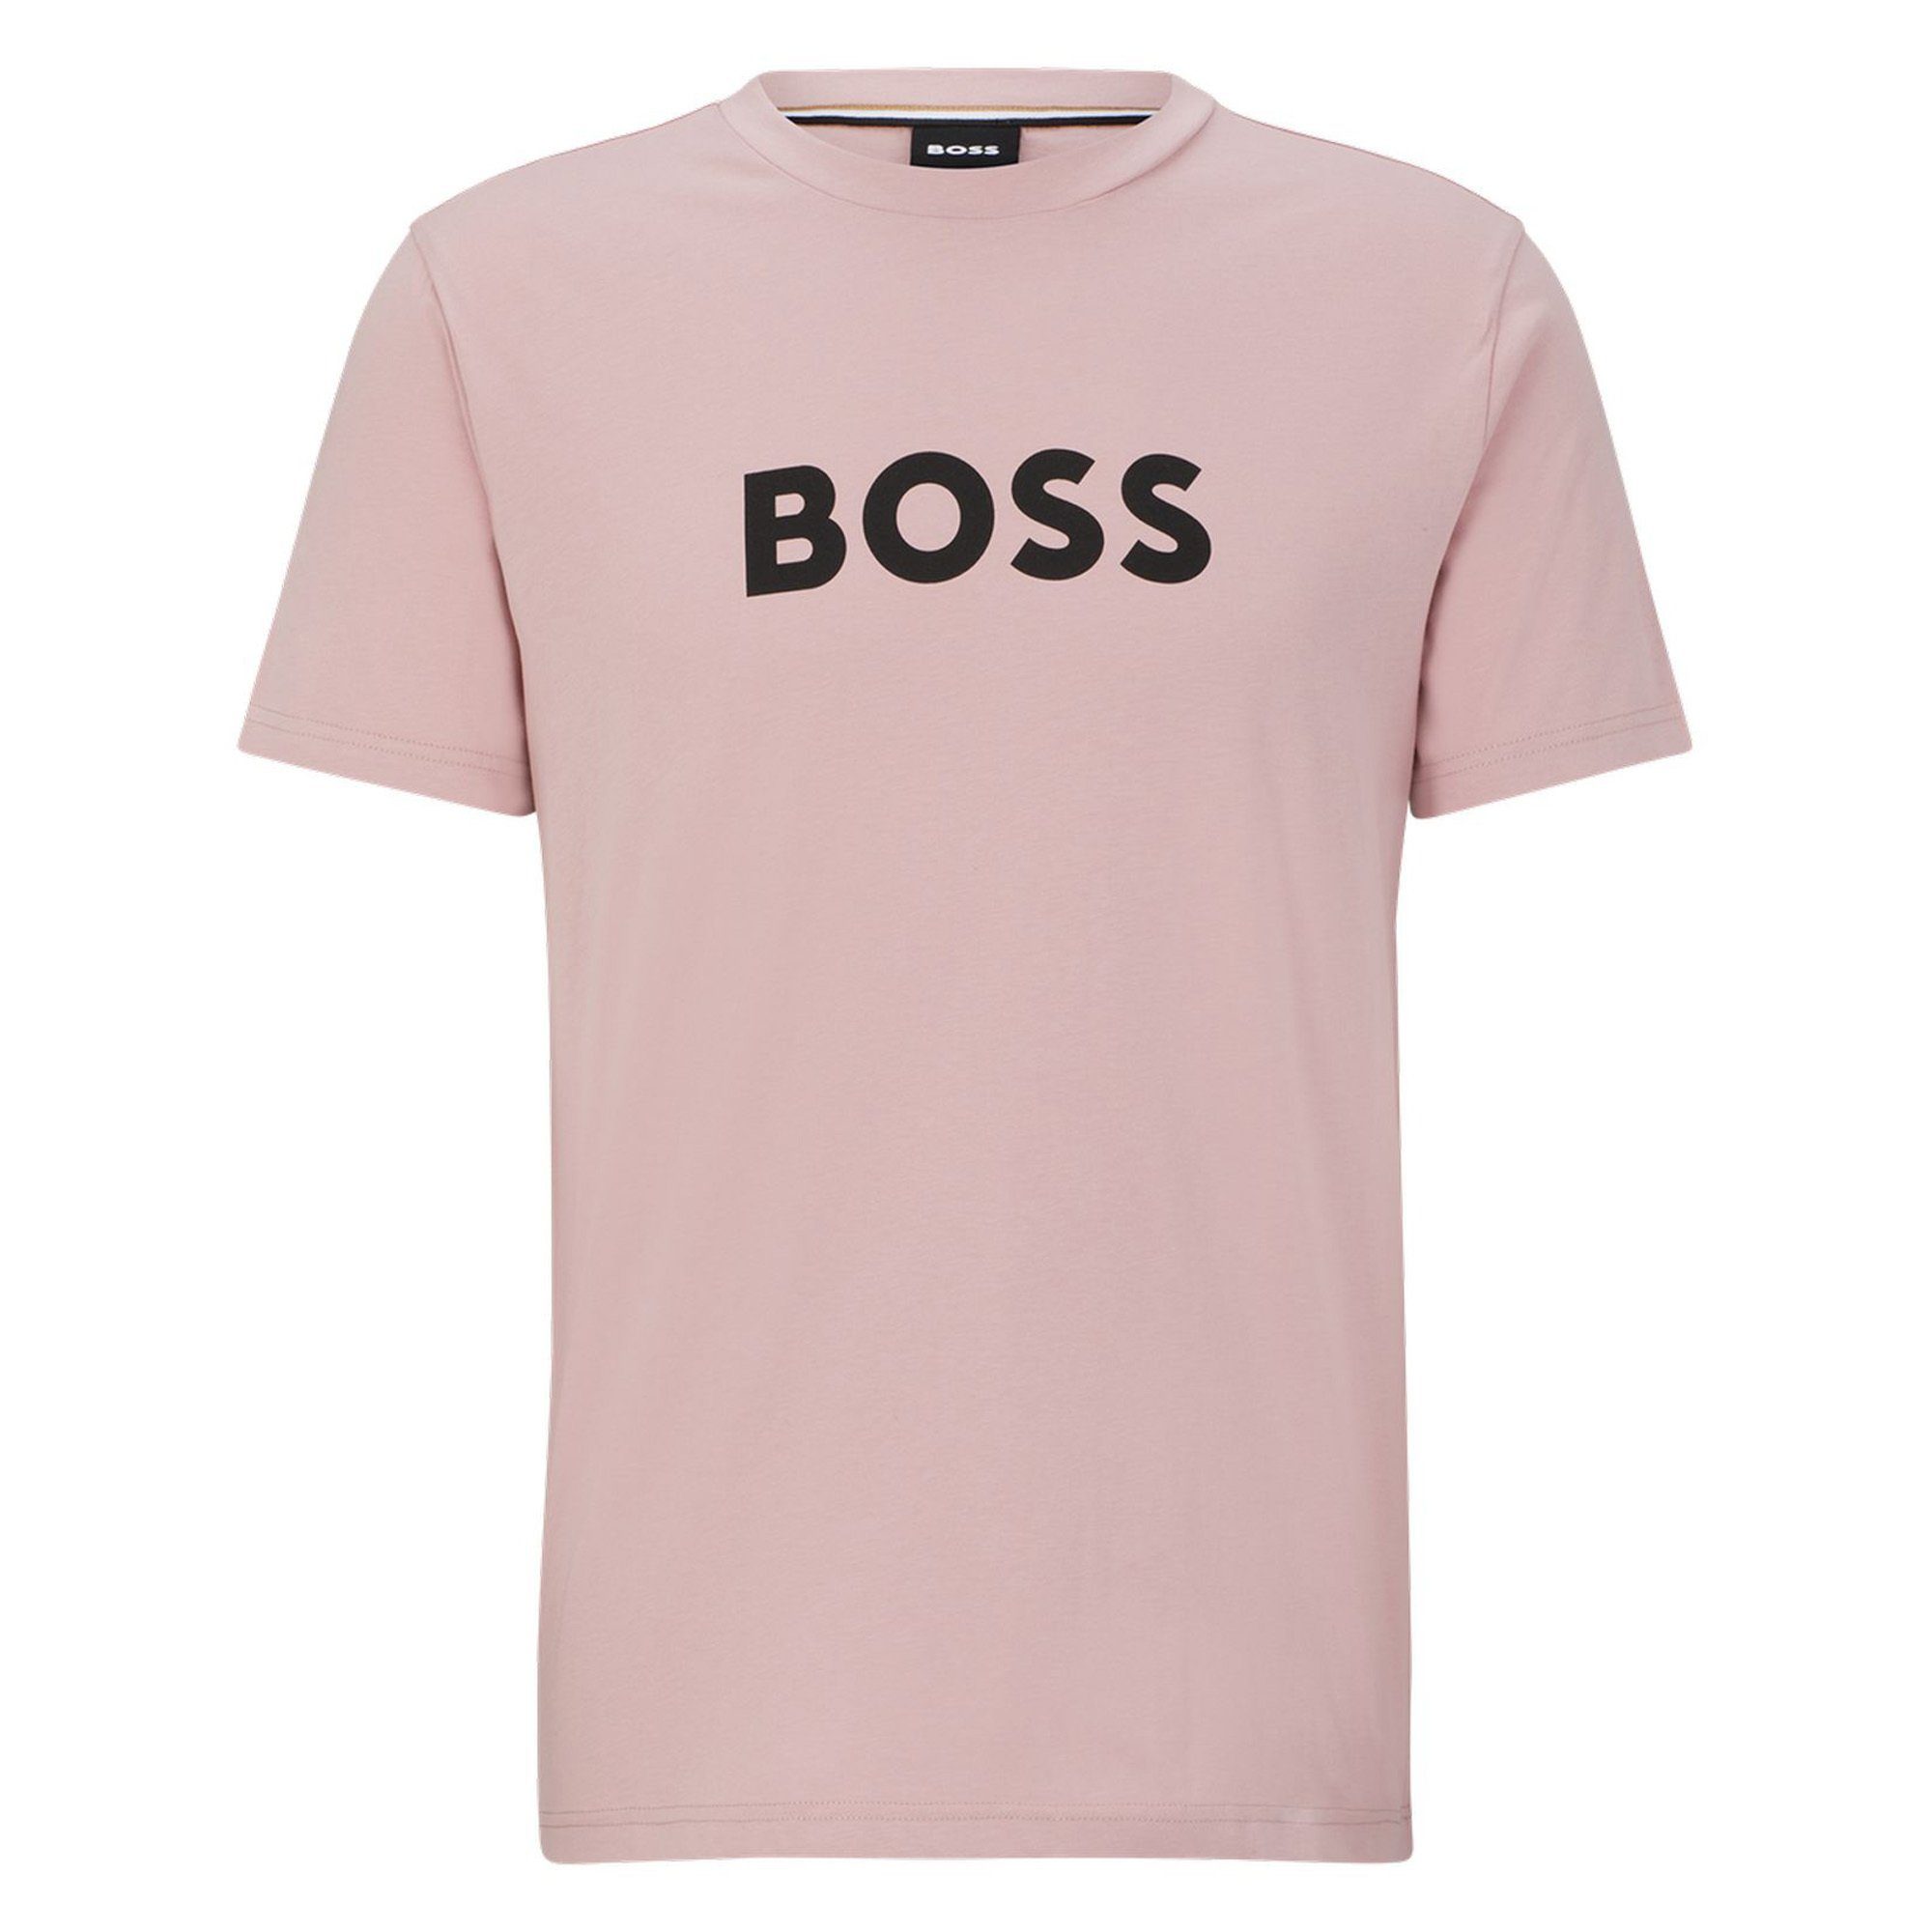 BOSS T-Shirt Herren T-Shirt - RN, Kurzarm Rundhals, Rosa T-Shirt